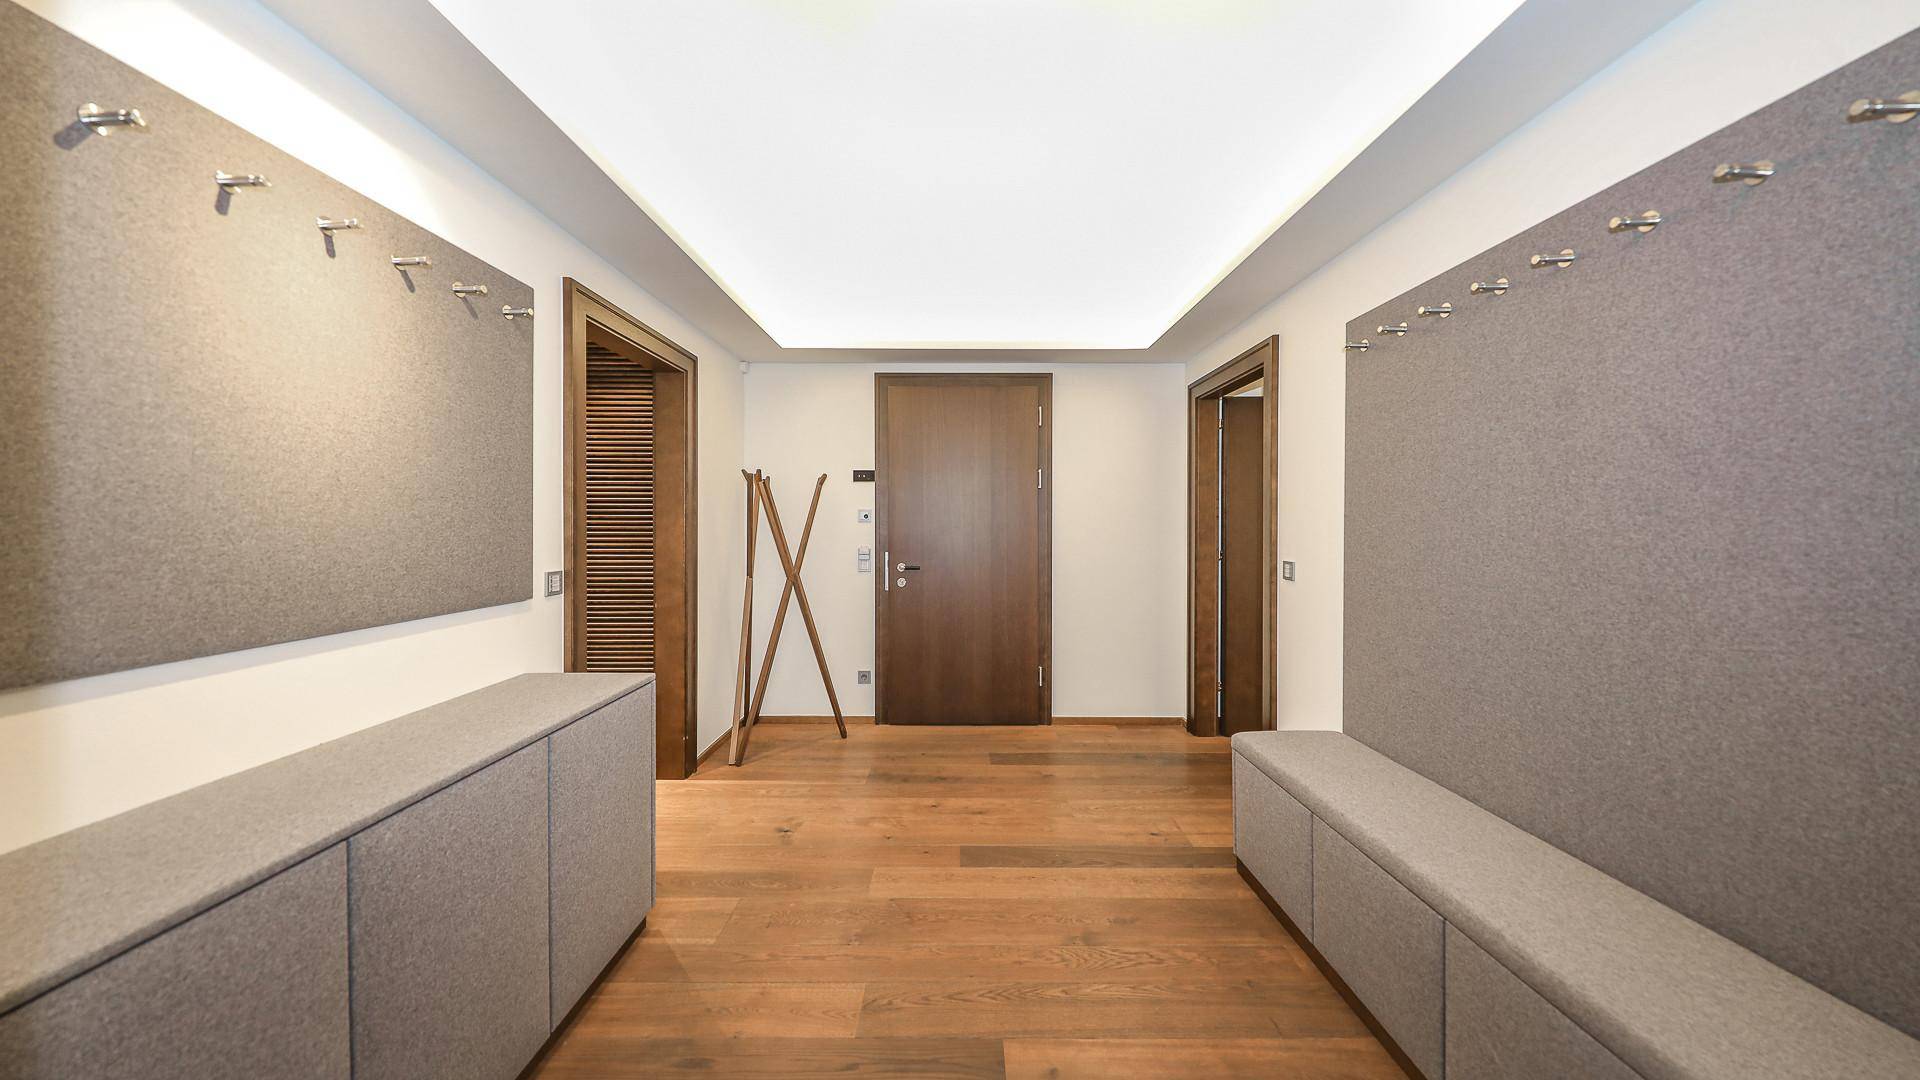 KITZIMMO-Luxus-Suite mit Zugang in ein 5-Sterne-Hotel - Immobilien Kitzbühel.